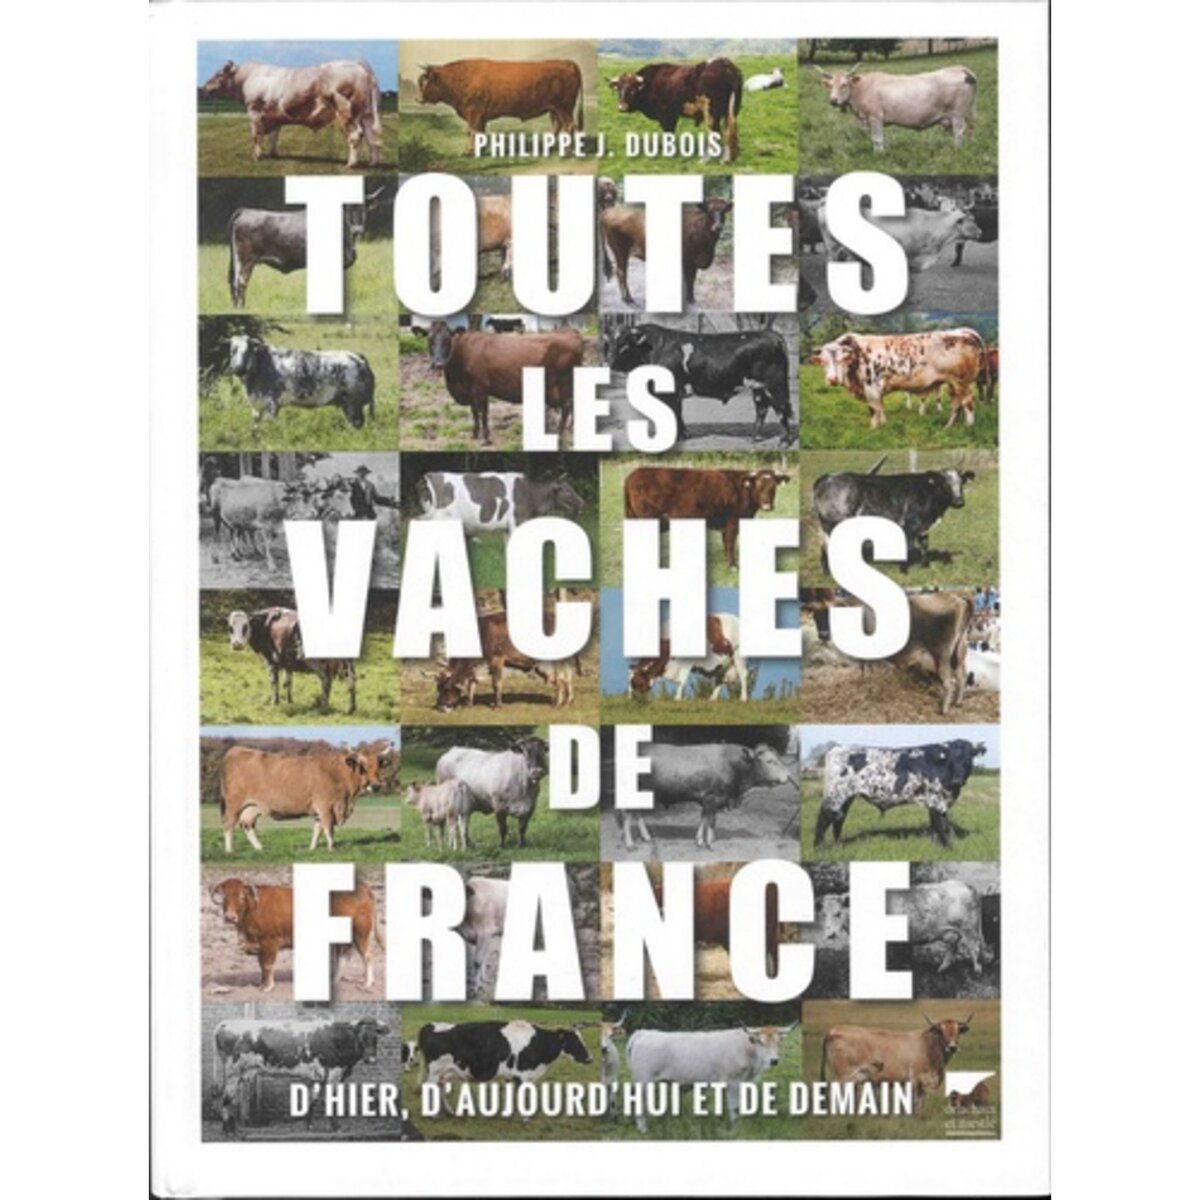  TOUTES LES VACHES DE FRANCE, D'HIER, D'AUJOURD'HUI ET DE DEMAIN, Dubois Philippe Jacques